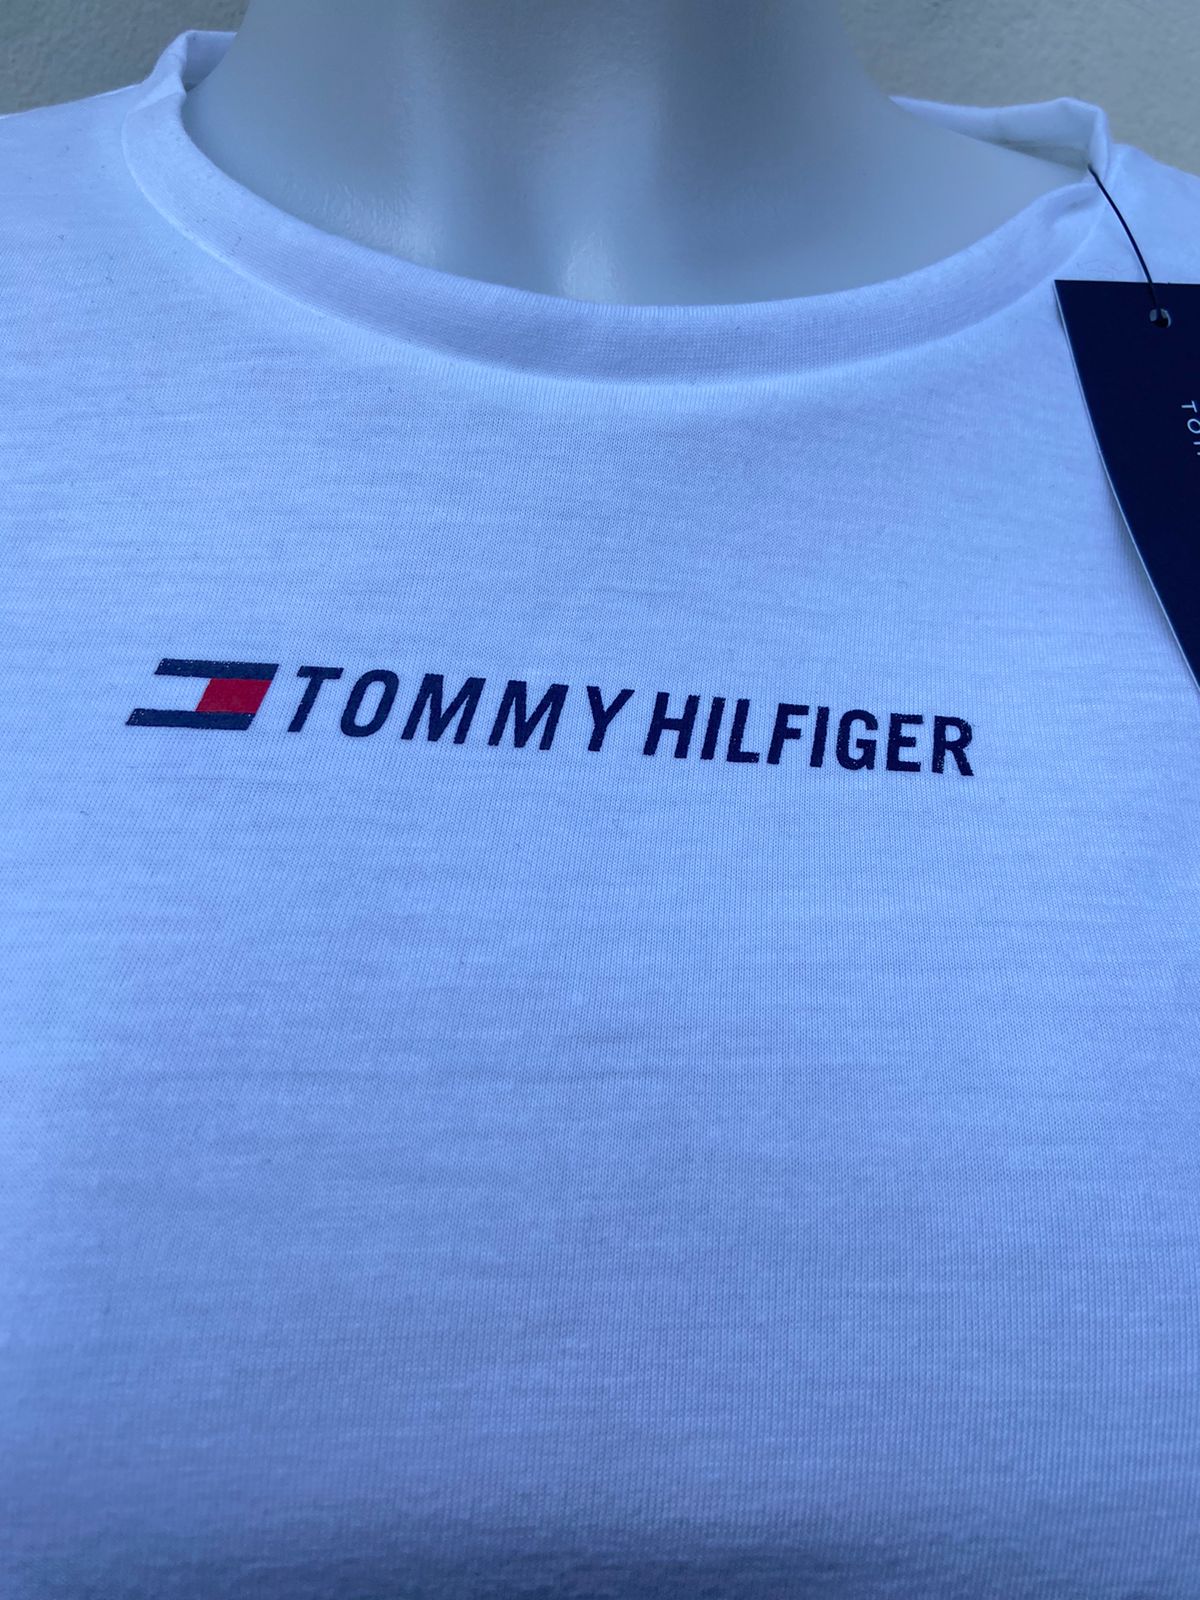 Blusa Tommy Hilfiger original, blanco con nudo en el centro y letras TOMMY HILFIGER con pequeño logotipo de la marca en el centro.